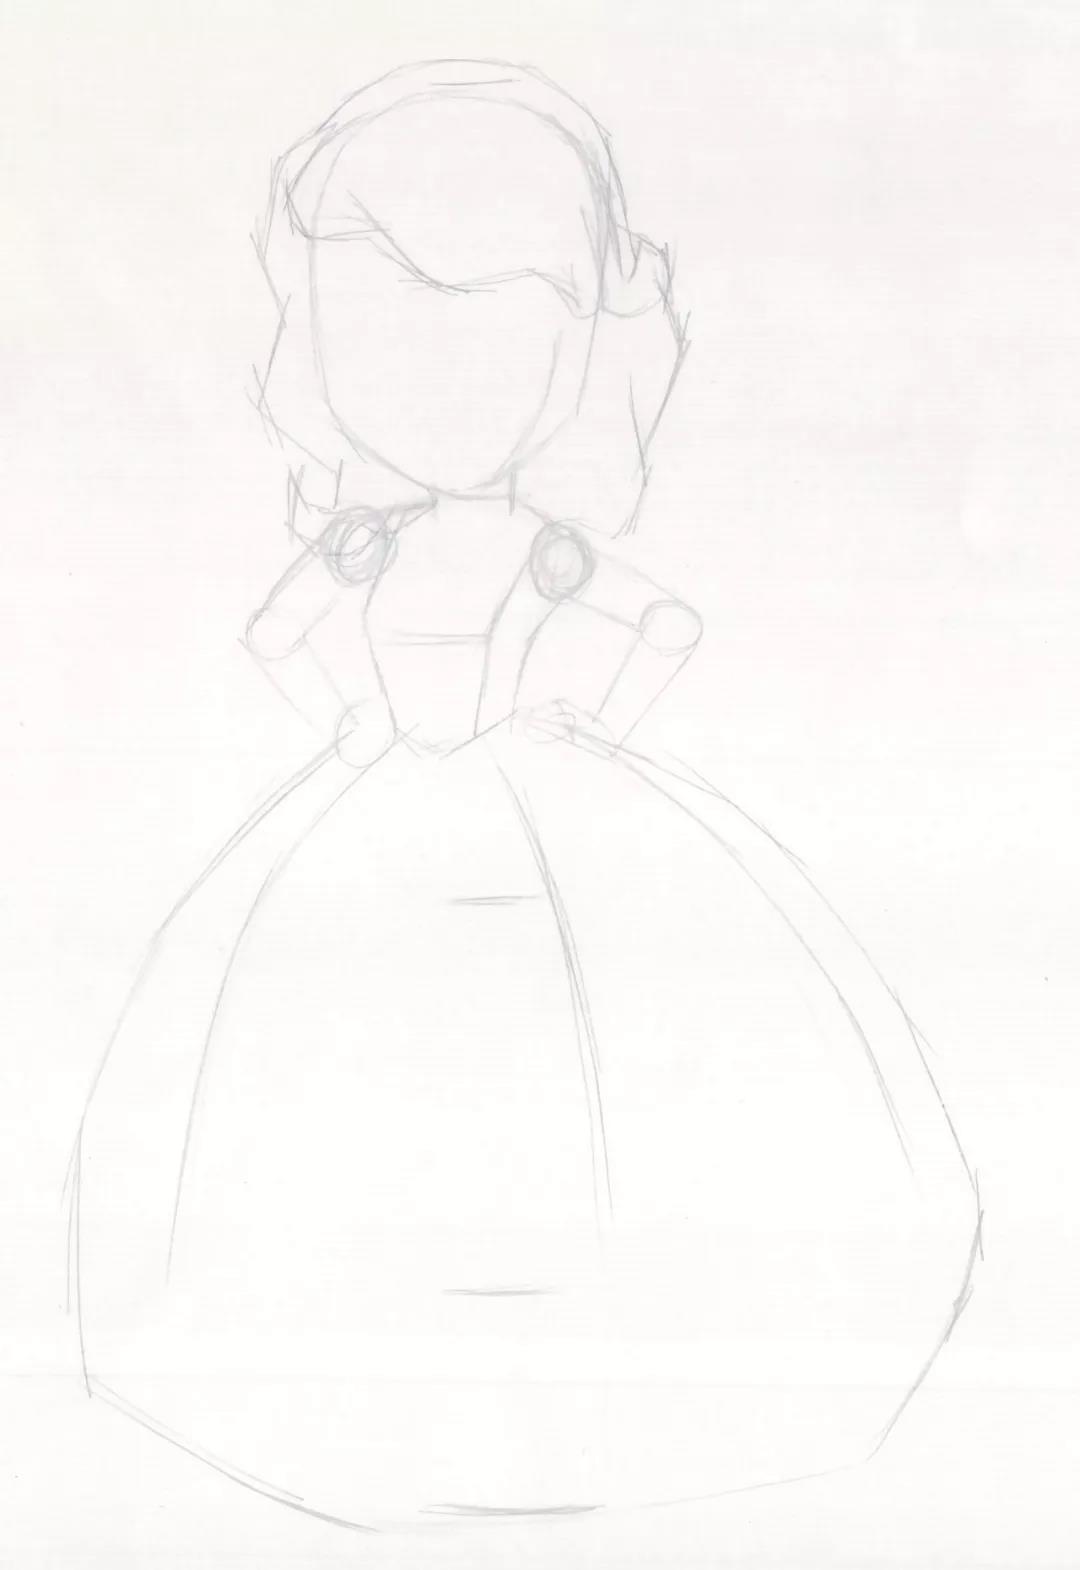 【绘画】如何绘画动画片《小公主苏菲亚》中可爱的卡通人物——苏菲亚 - 哔哩哔哩